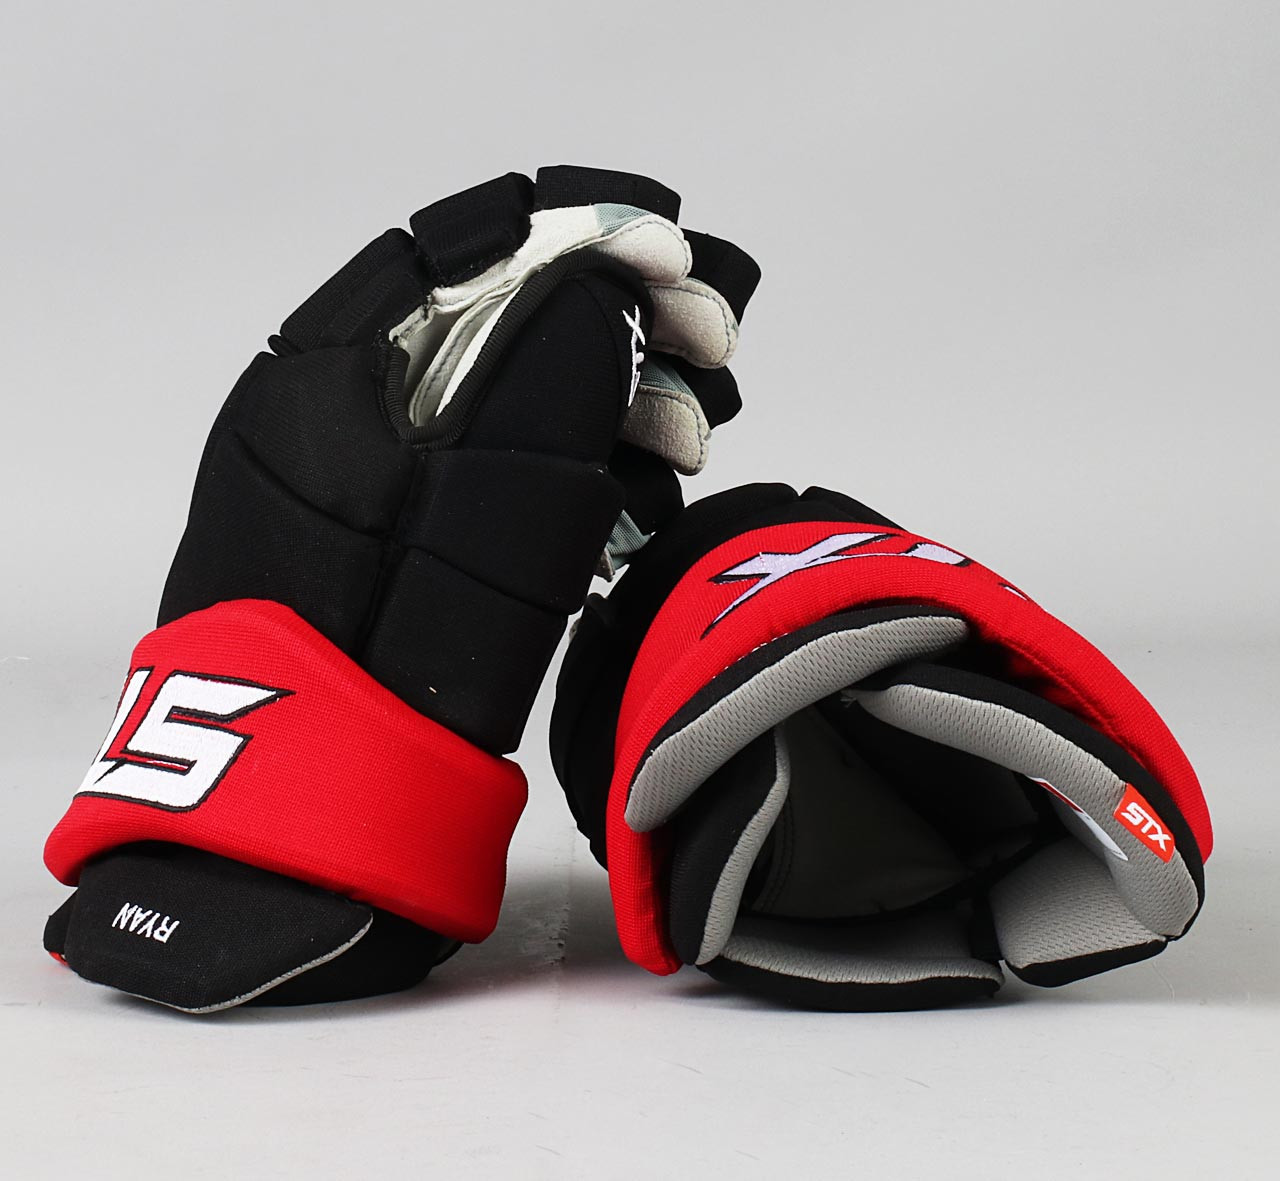 15" STX Surgeon RX3 Gloves - Bobby Ryan Ottawa Senators - Pro Stock Hockey